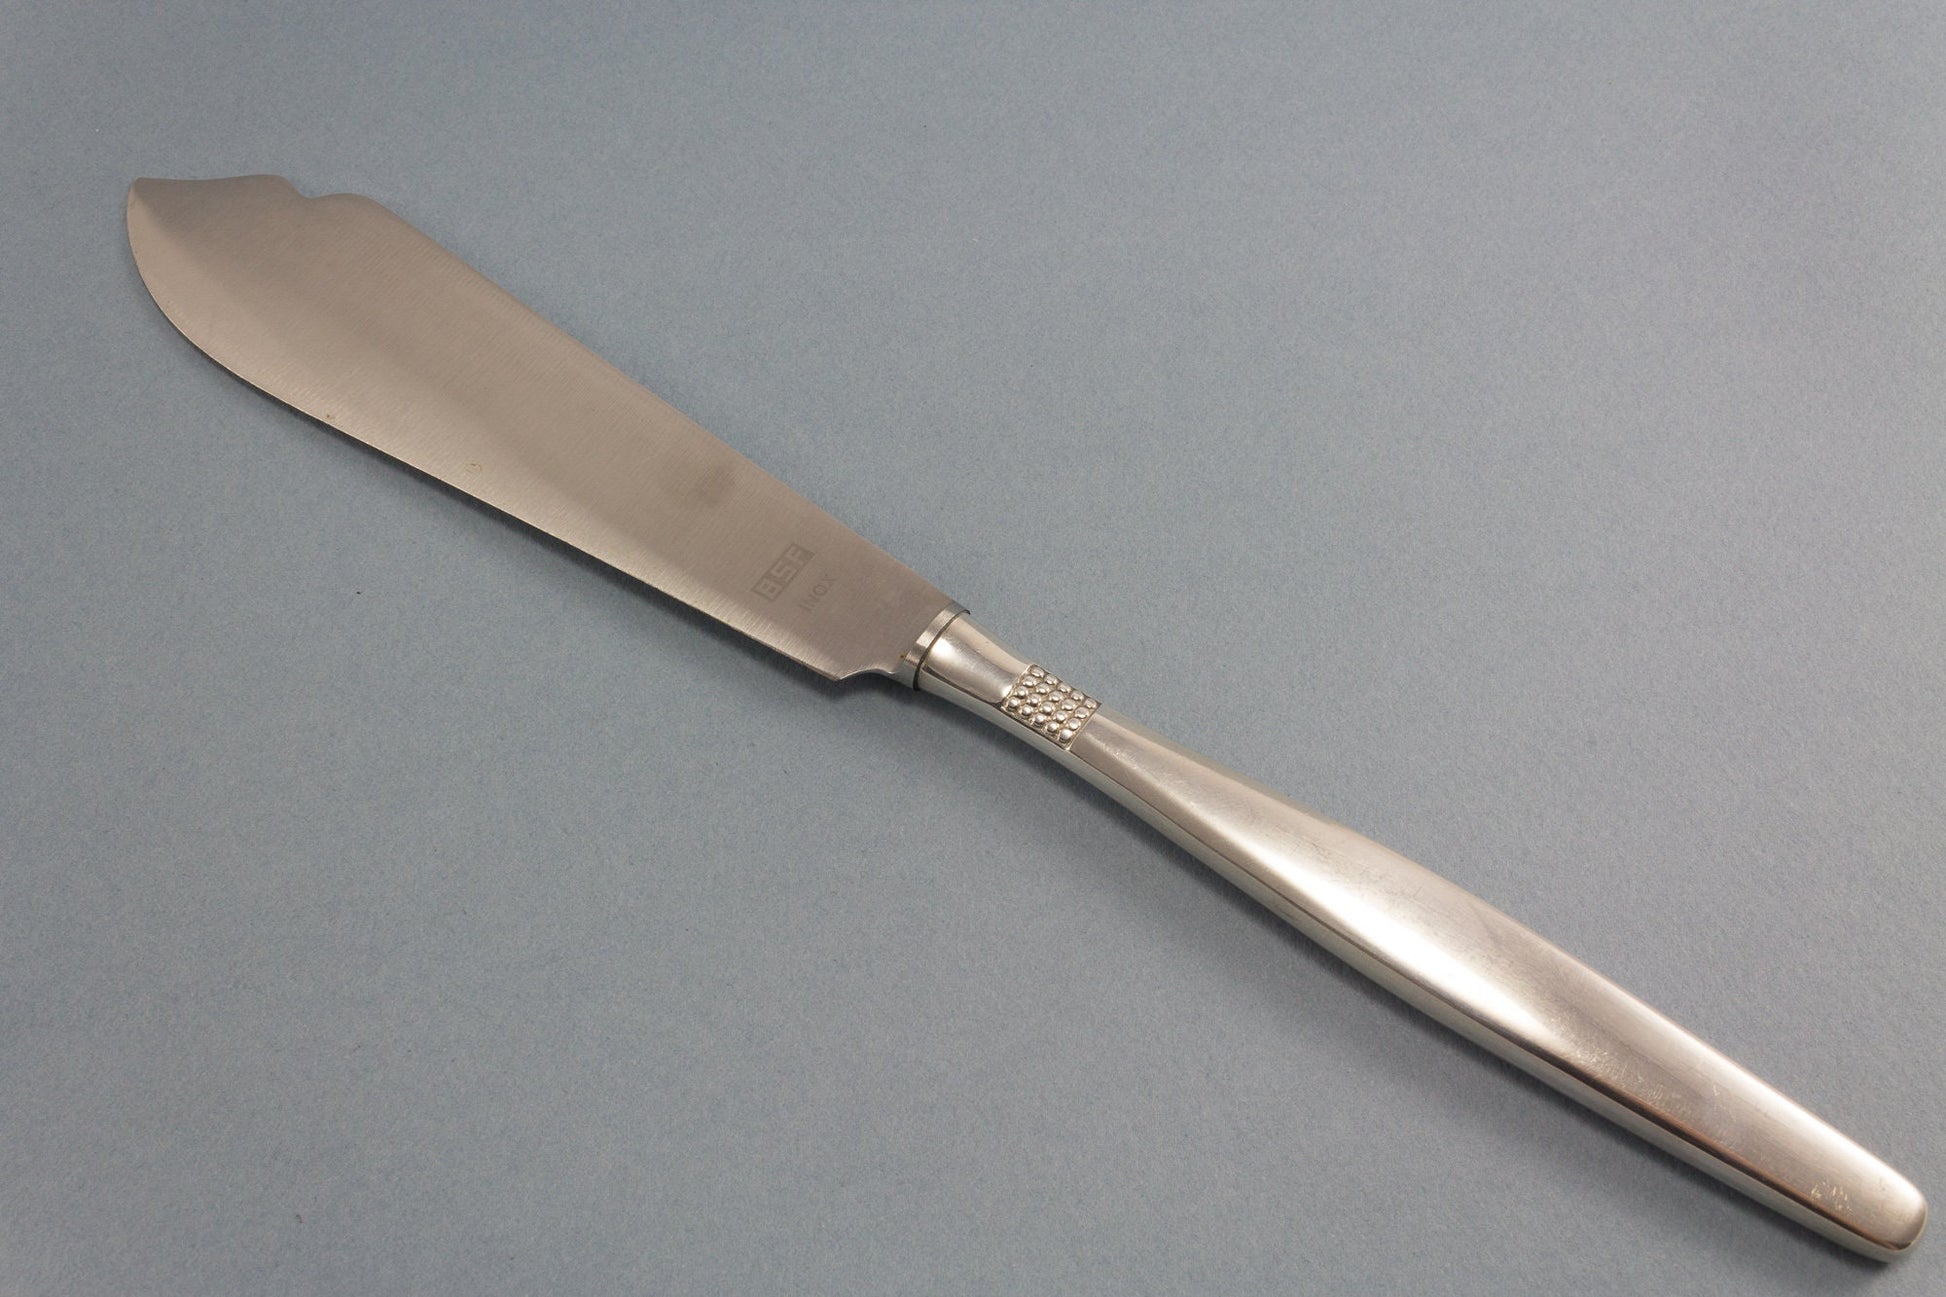 Versilbertes Tortenmesser von BSF, Dänisch Perl 111, Messer für die Hochzeitstorte, Vintage Besteck